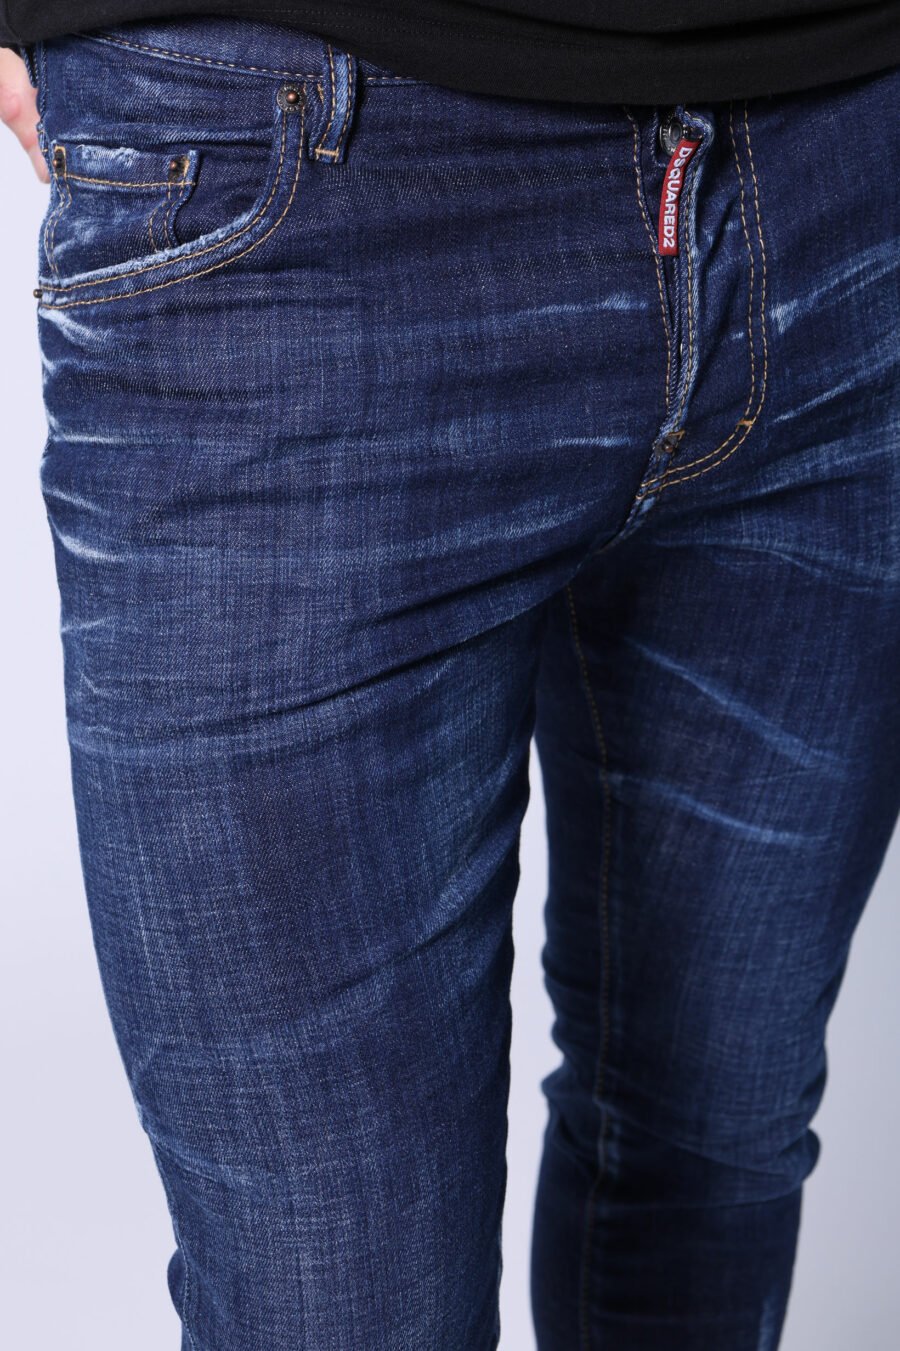 Dunkelblaue, halb ausgefranste "Skater-Jeans" - Untitled Catalog 05477